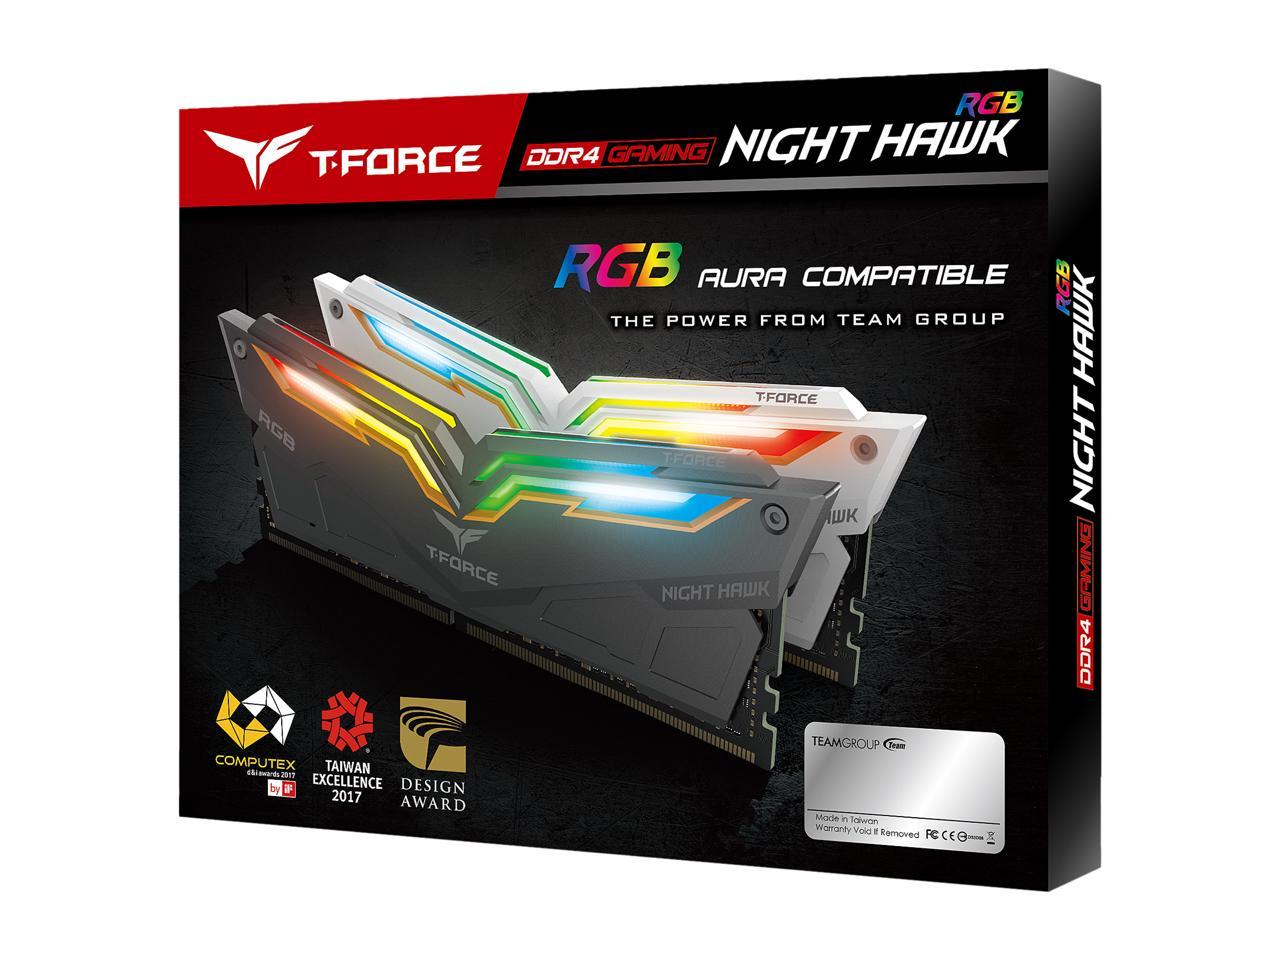 Team T-Force Night Hawk RGB 16GB (2 x 8GB) 288-Pin DDR4 SDRAM DDR4 3200 (PC4 25600) Desktop Memory Model TF1D416G3200HC16CDC01